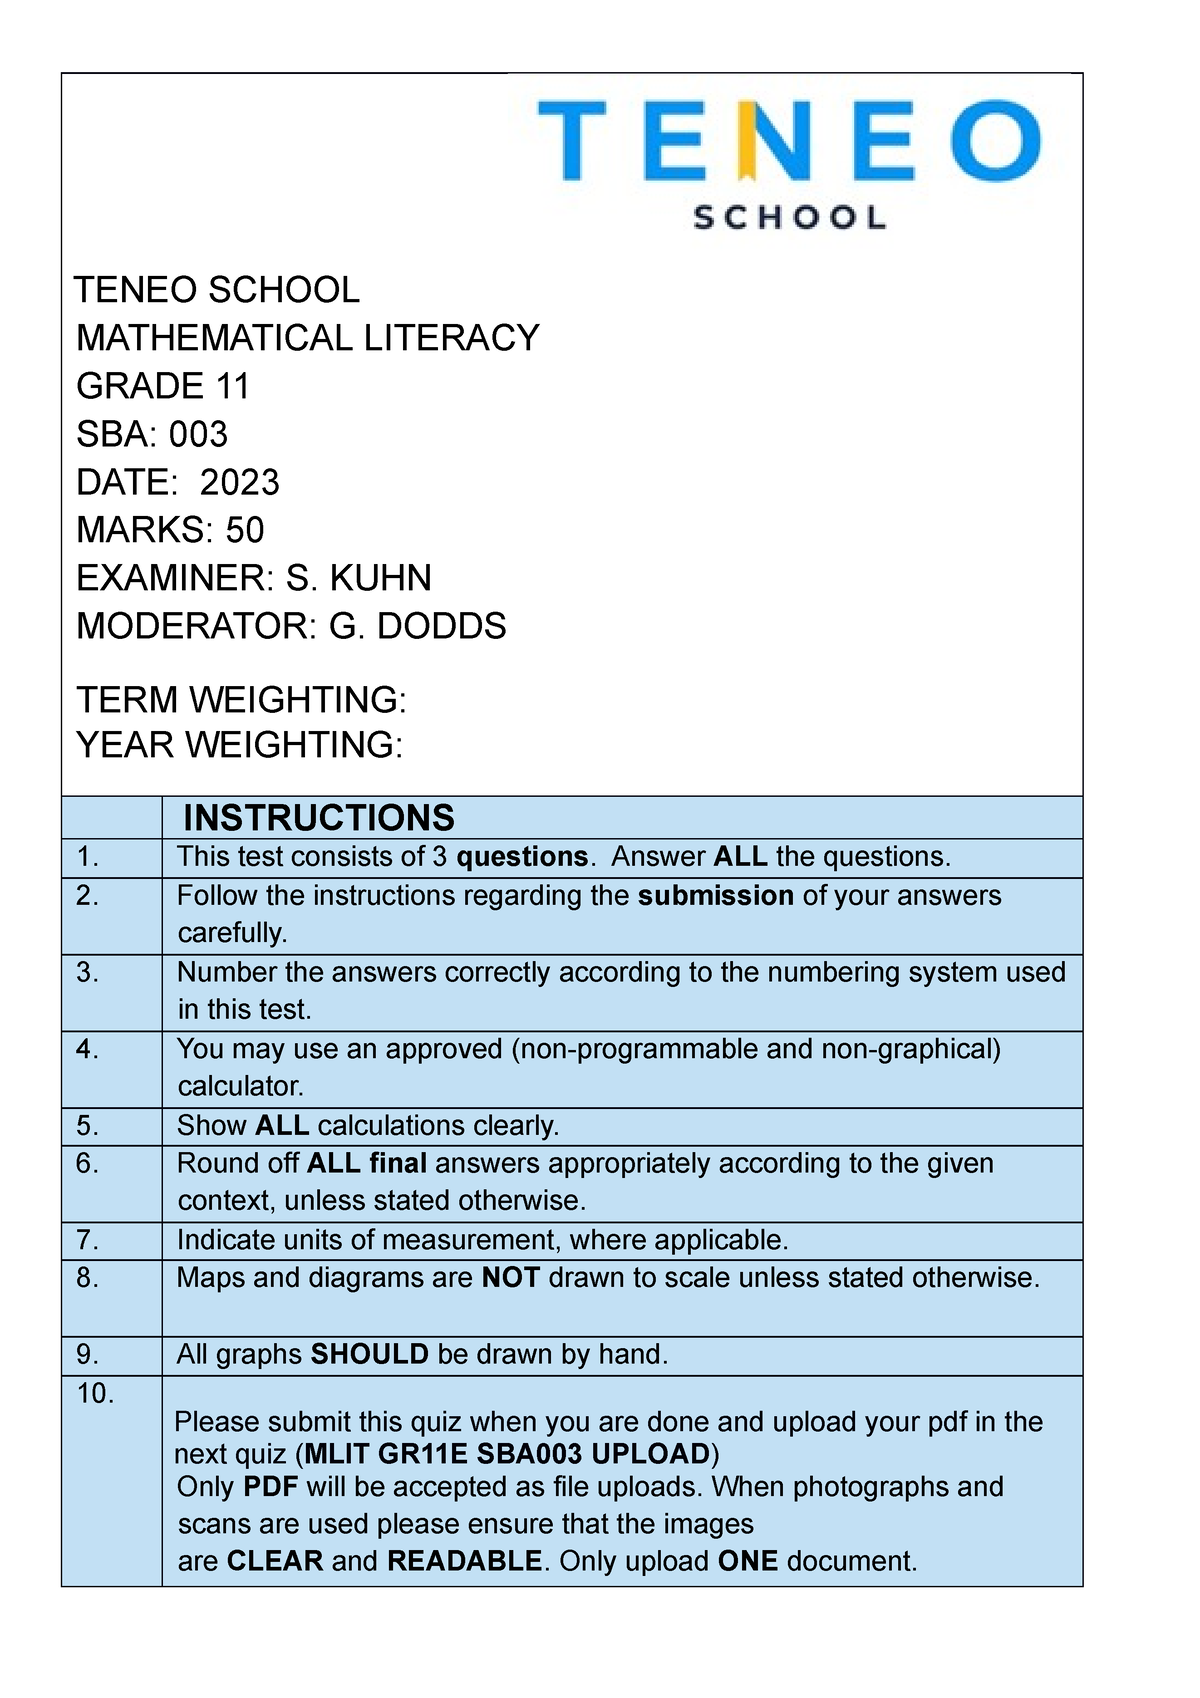 mathematical literacy assignment grade 11 august 2023